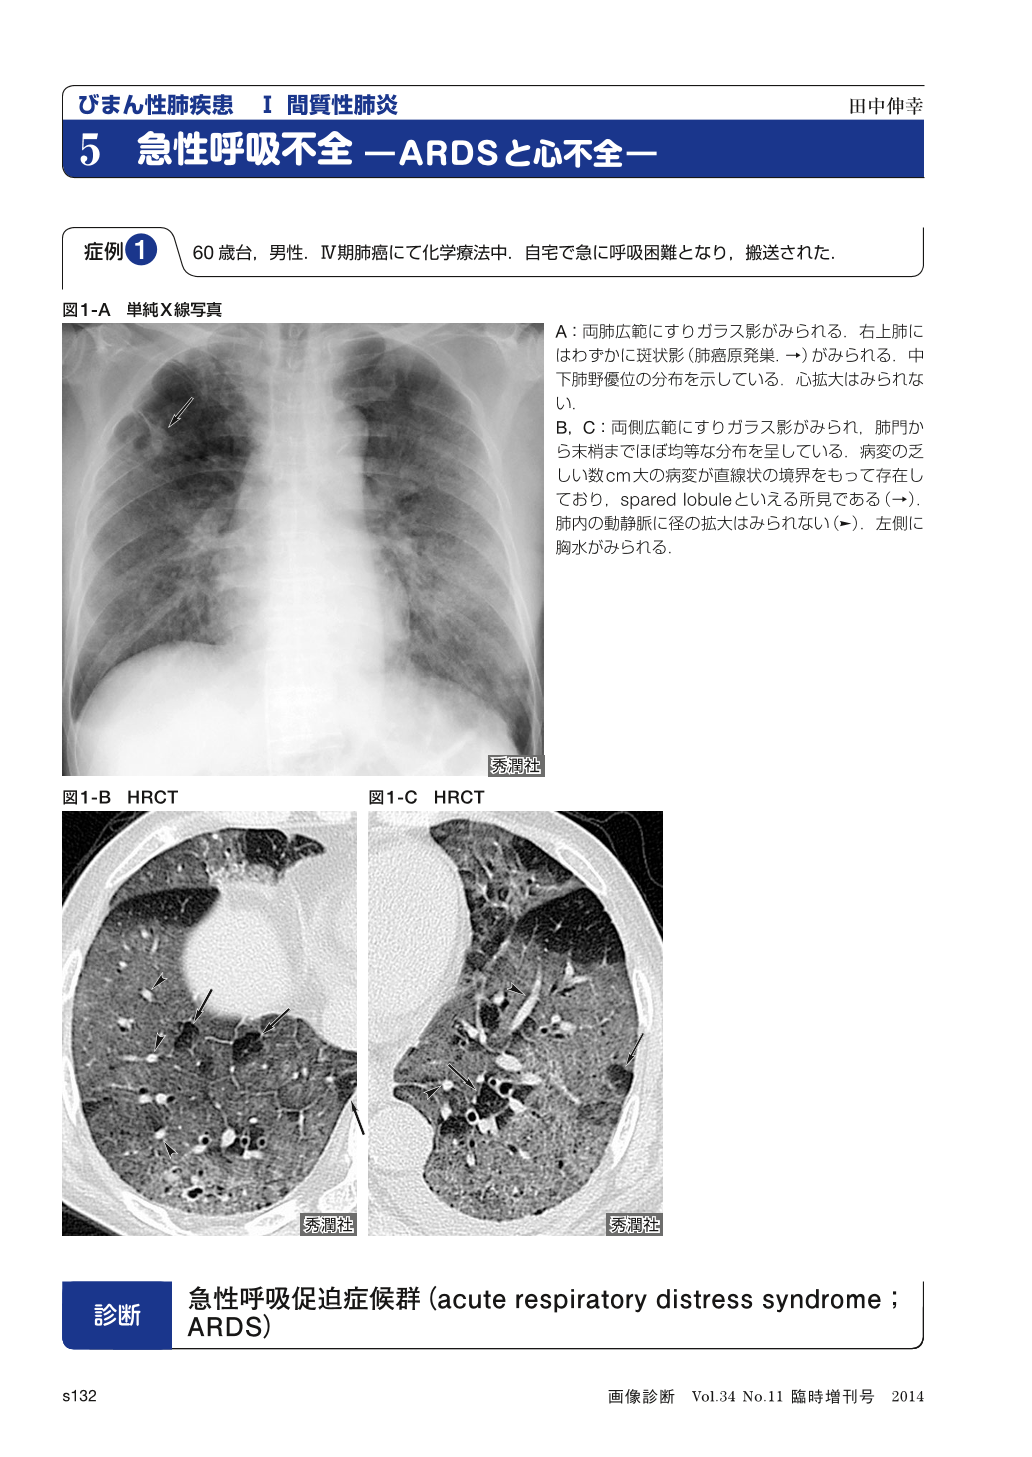 びまん性肺疾患 間質性肺炎 急性呼吸不全 ARDSと心不全 (画像診断 34巻 